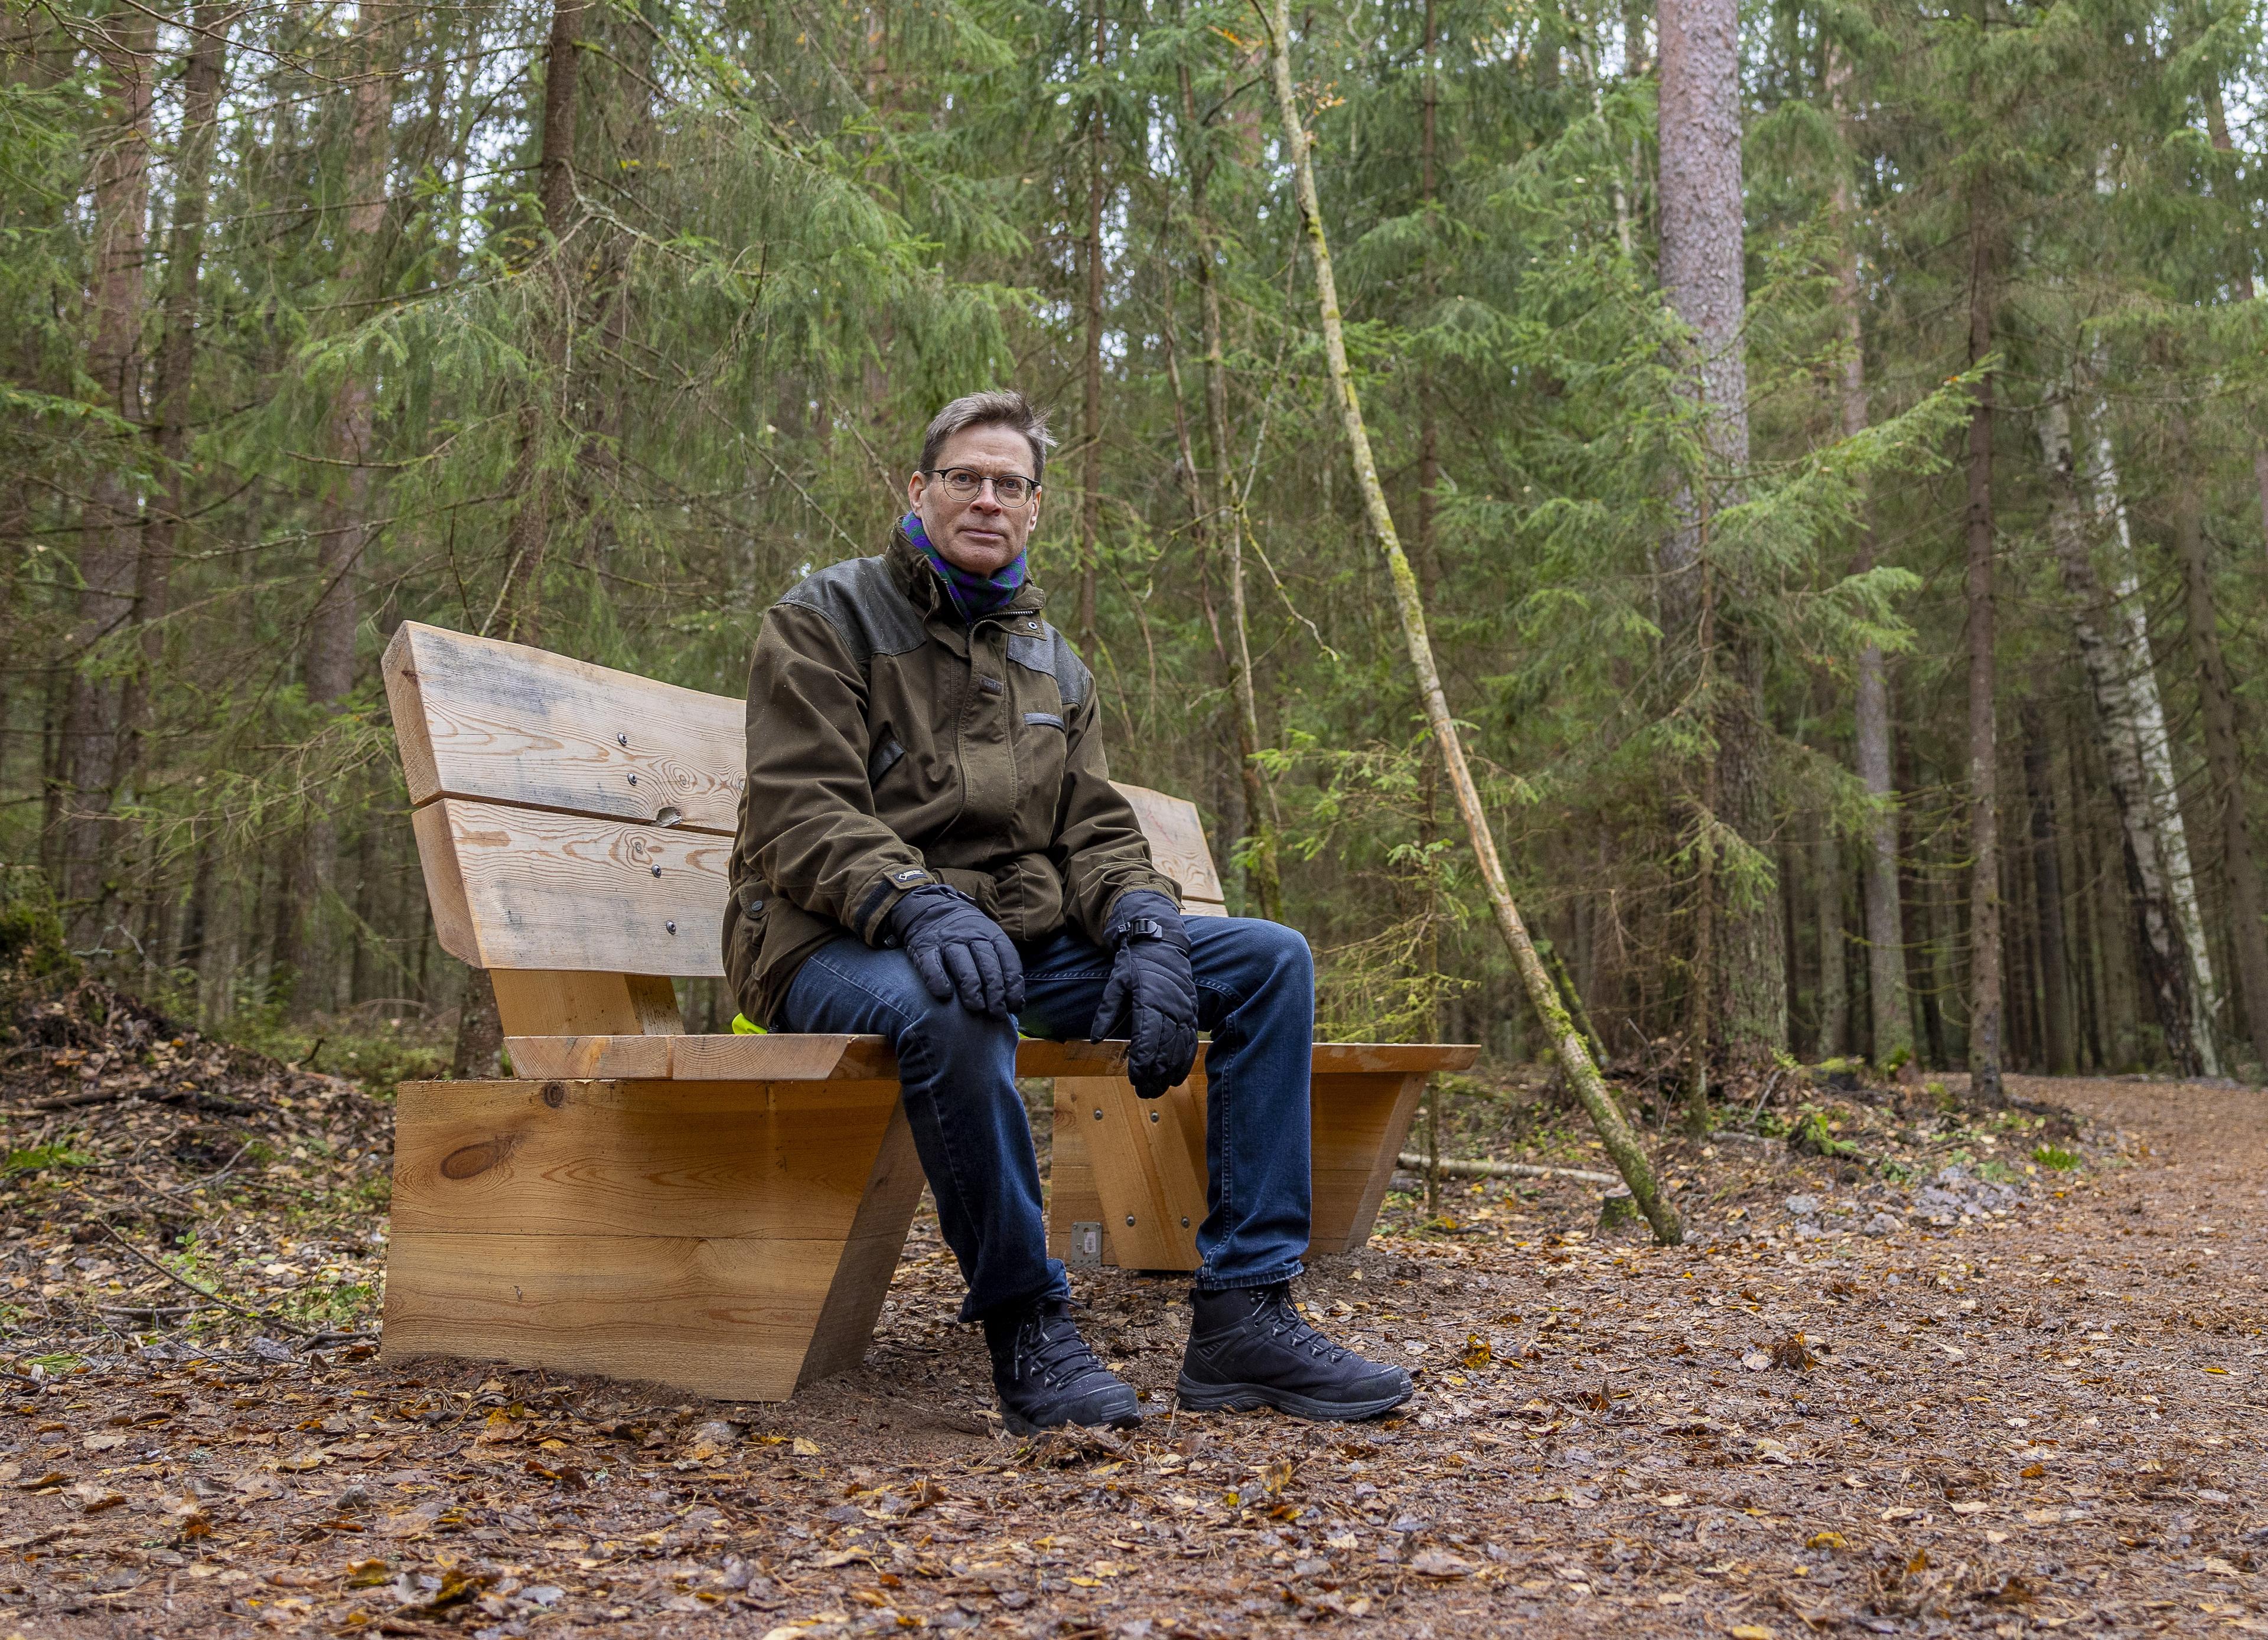 Keski-ikäinen silmälasipäinen mies istuu metsätien varrella vaalealla puupenkillä. Taustalla näkyy kuusimetsää ja muutama koivu, vuodenaika kuvassa on loppusyksy.